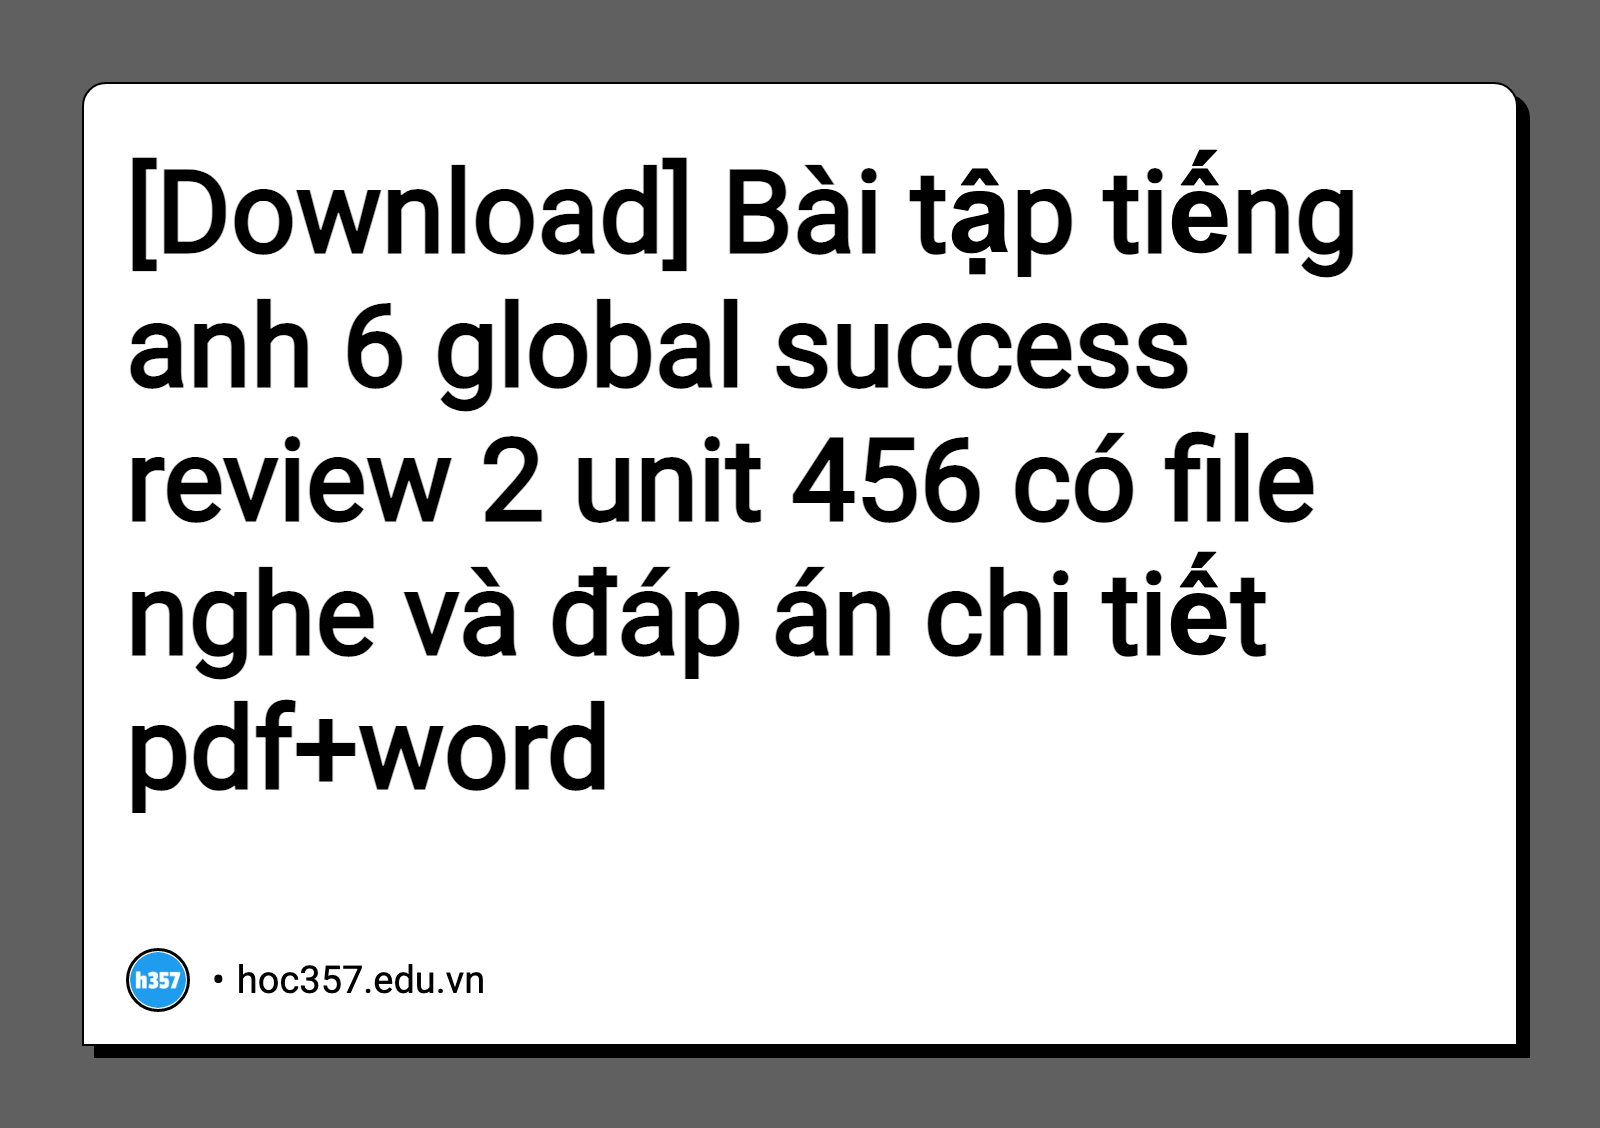 Hình minh họa Bài tập tiếng anh 6 global success review 2 unit 456 có file nghe và đáp án chi tiết